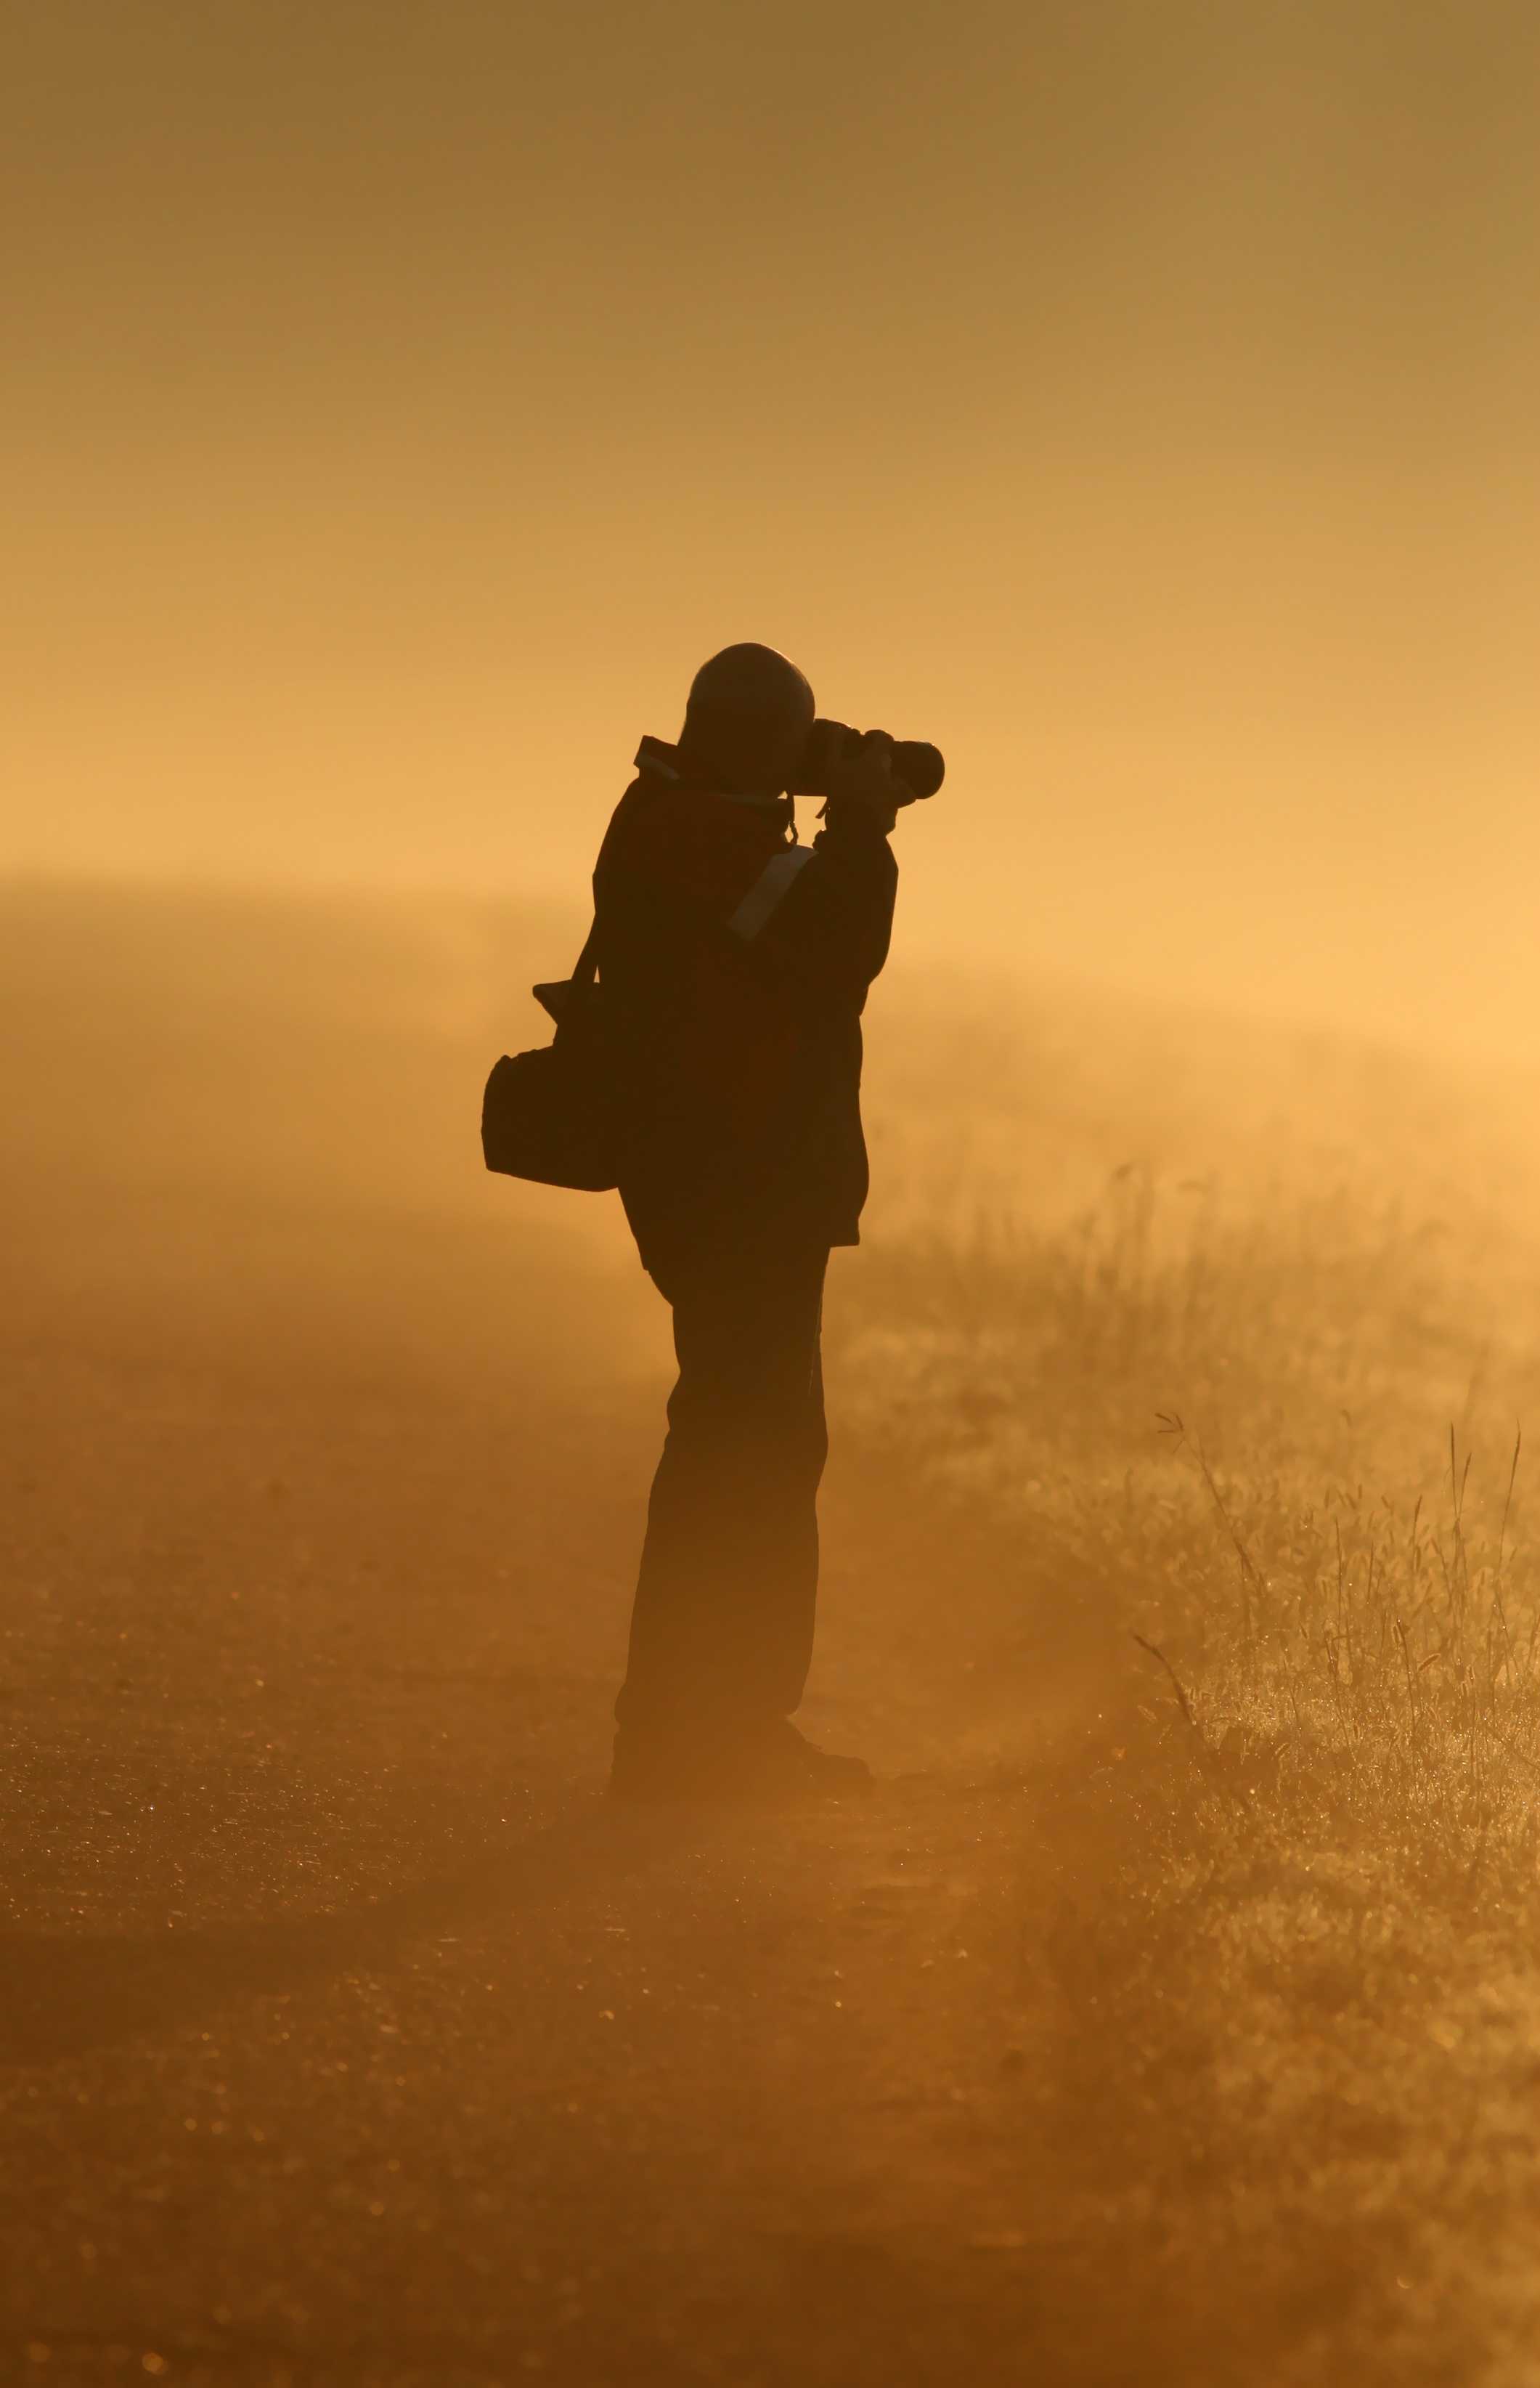 Photographer in sandstorm